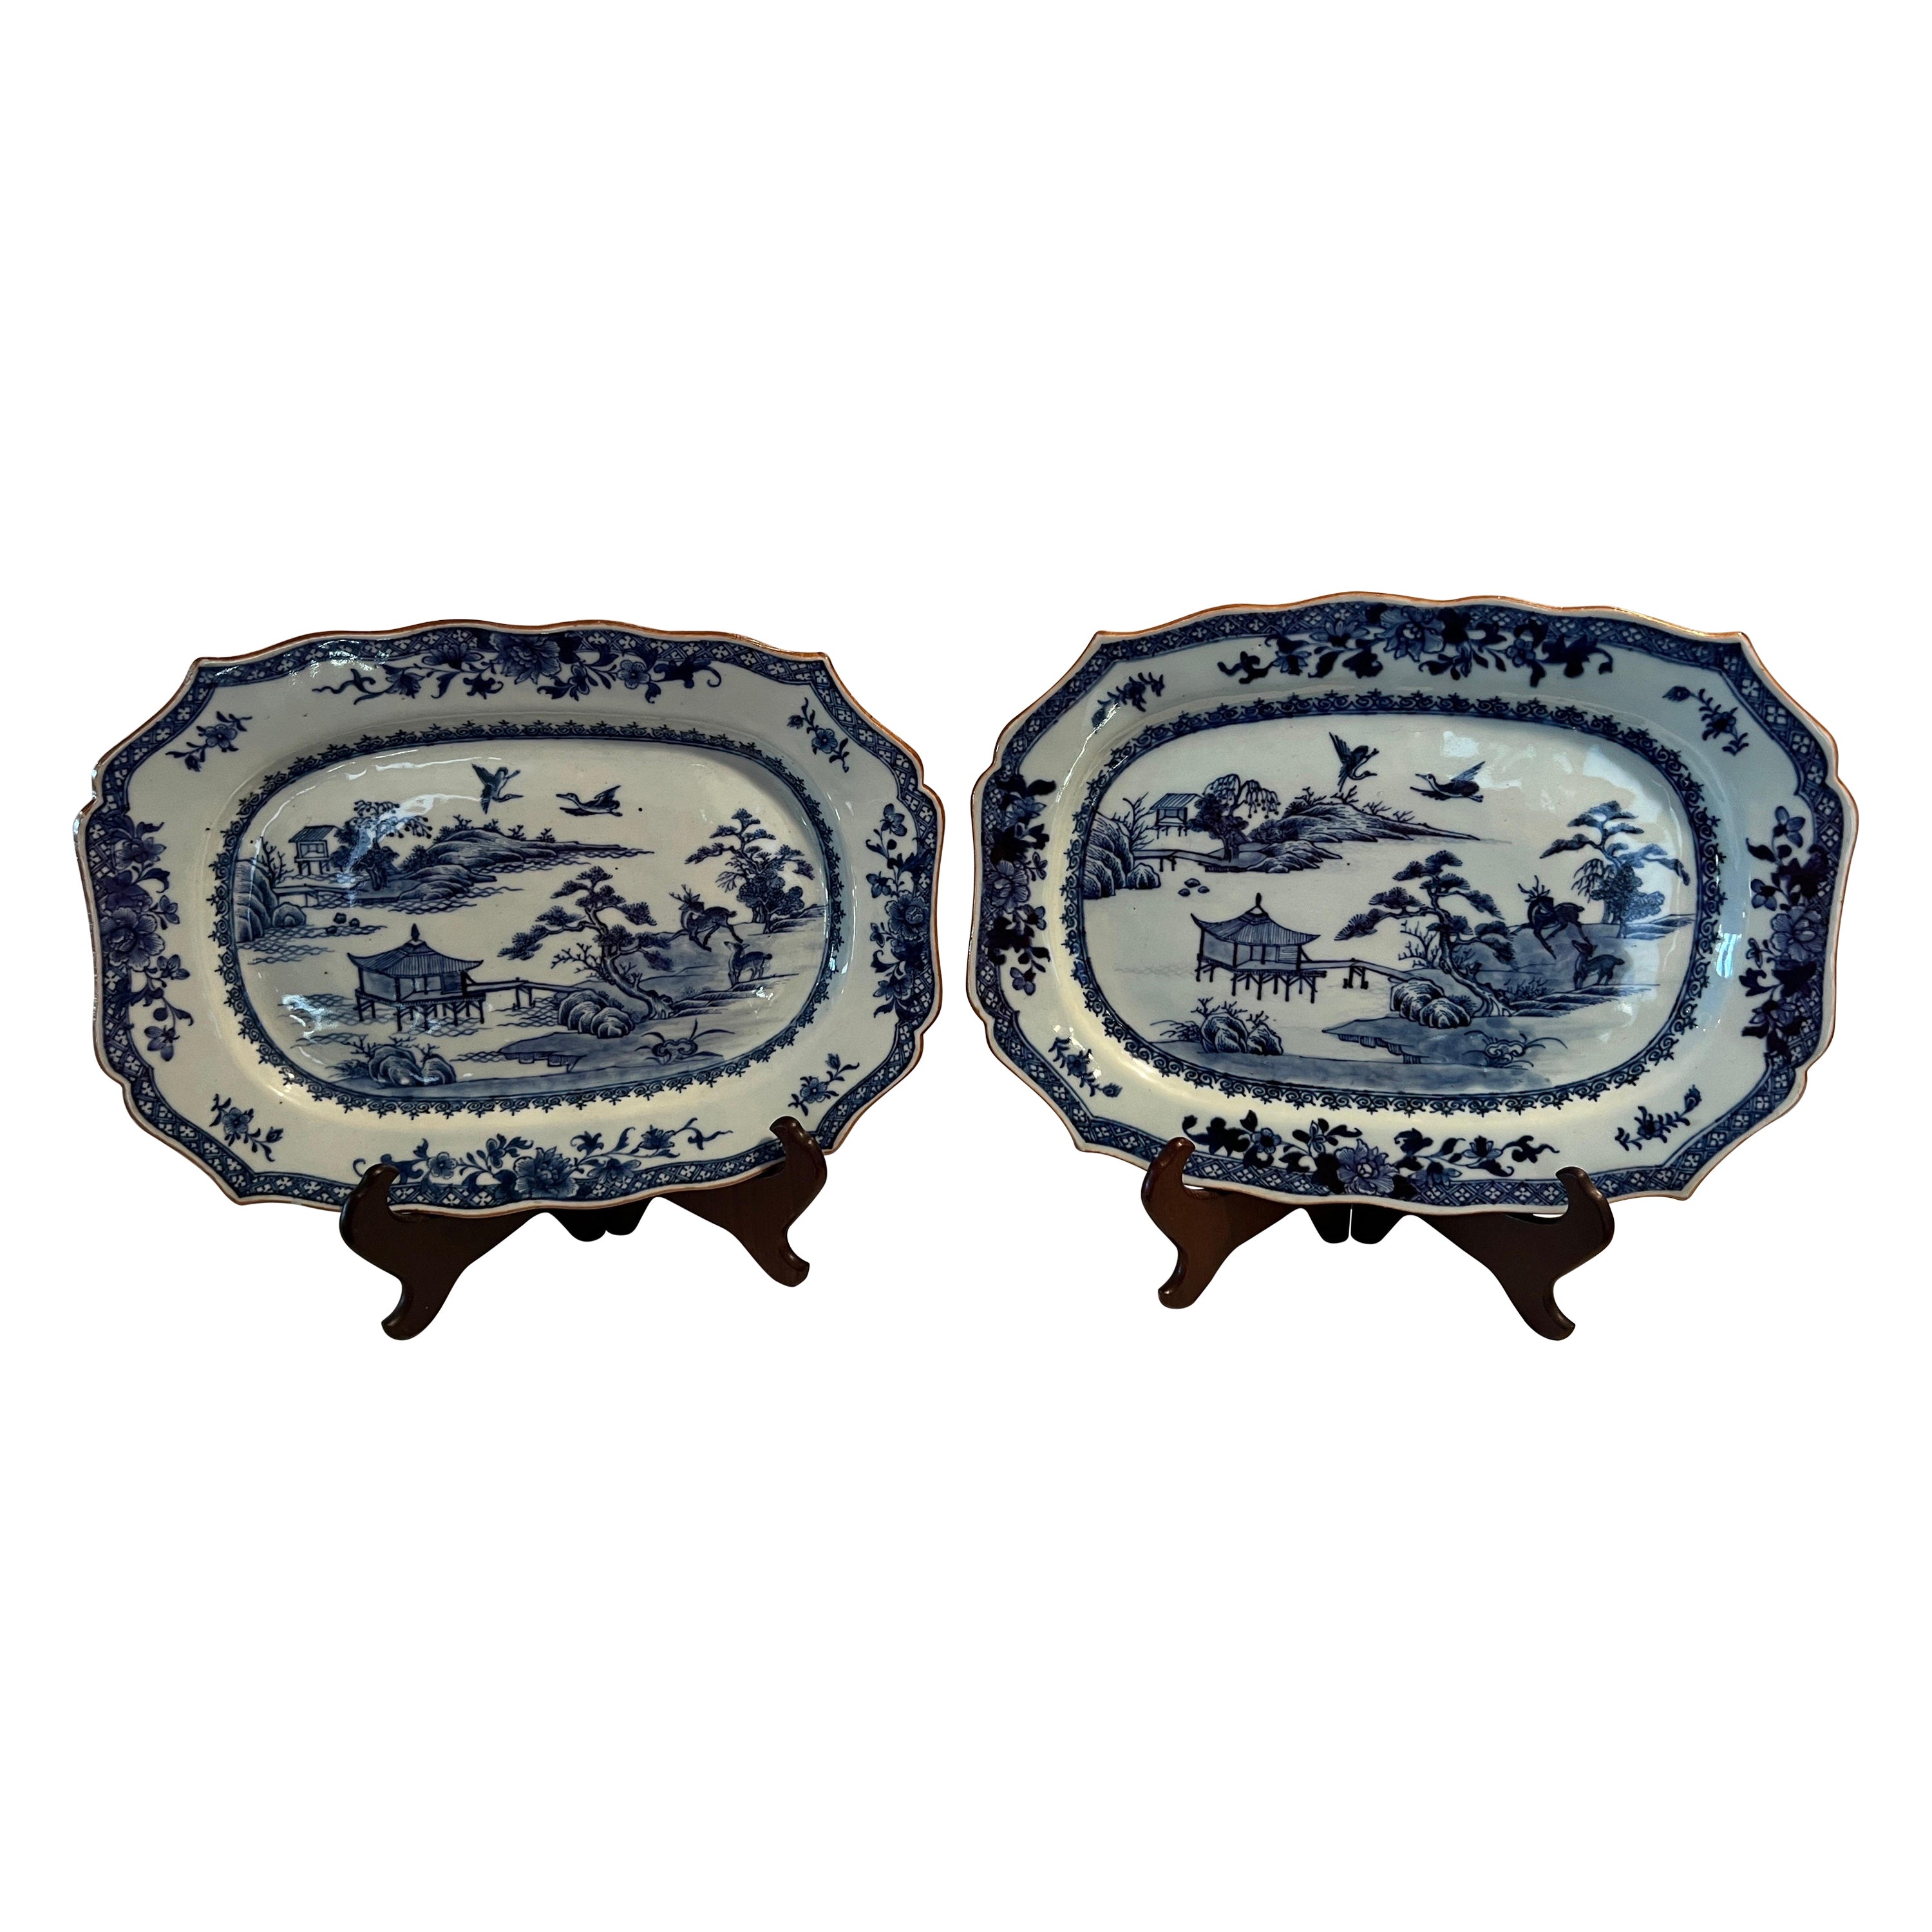 Paar Qianlong-Porzellanteller im chinesischen Exportstil aus blauem und weißem Porzellan – Hirschlandschaft